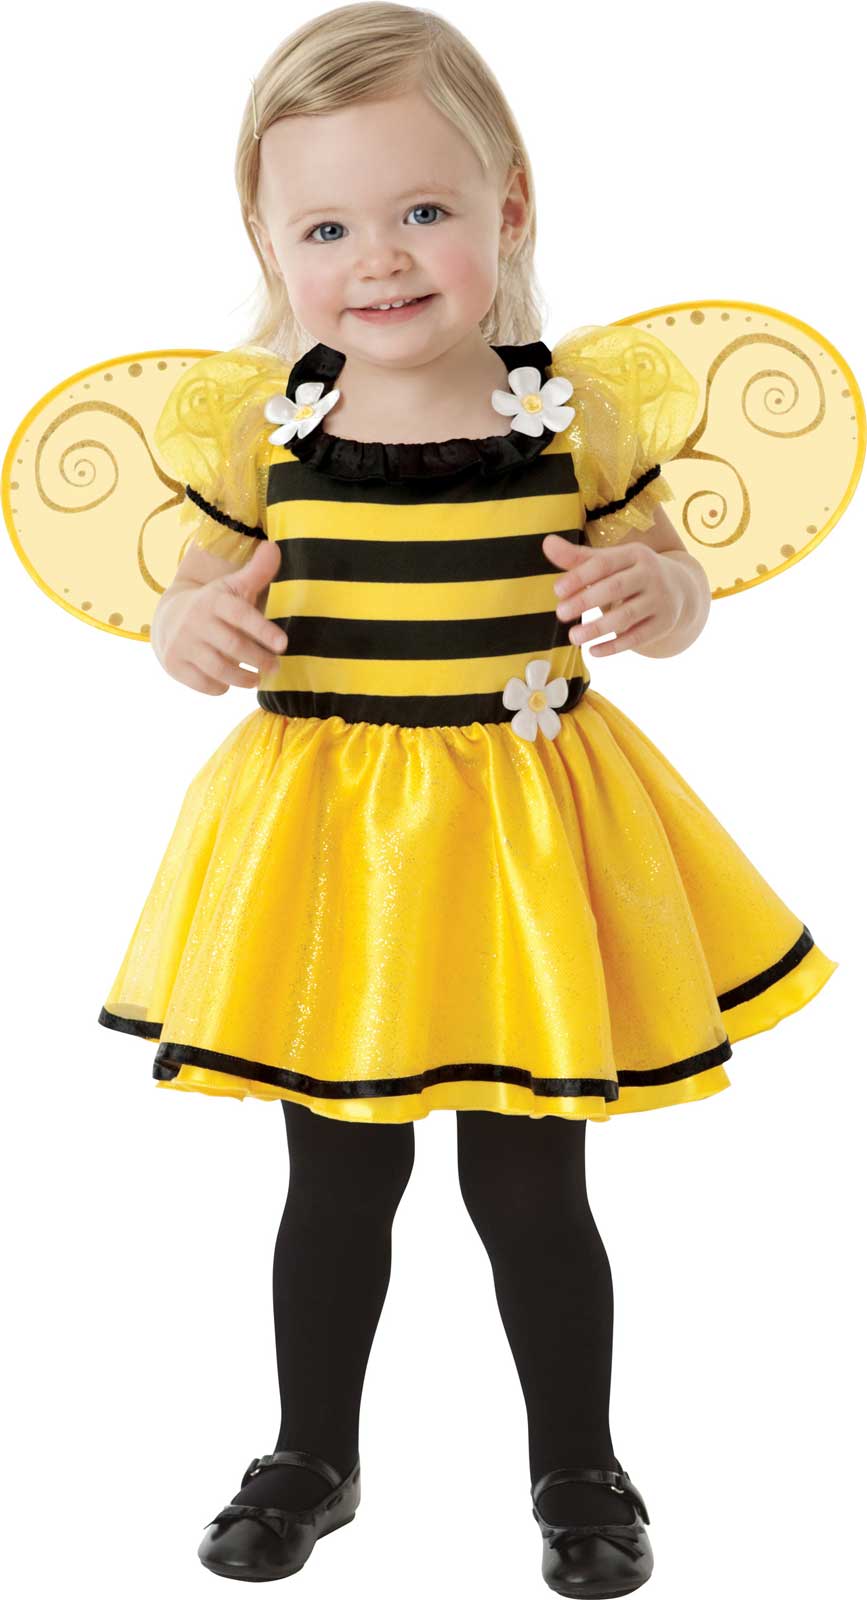 74-98cm An72 Taglia 9M-3A Ape Bee Costume per bambini e neonati indossabile comodamente sui vestiti normali